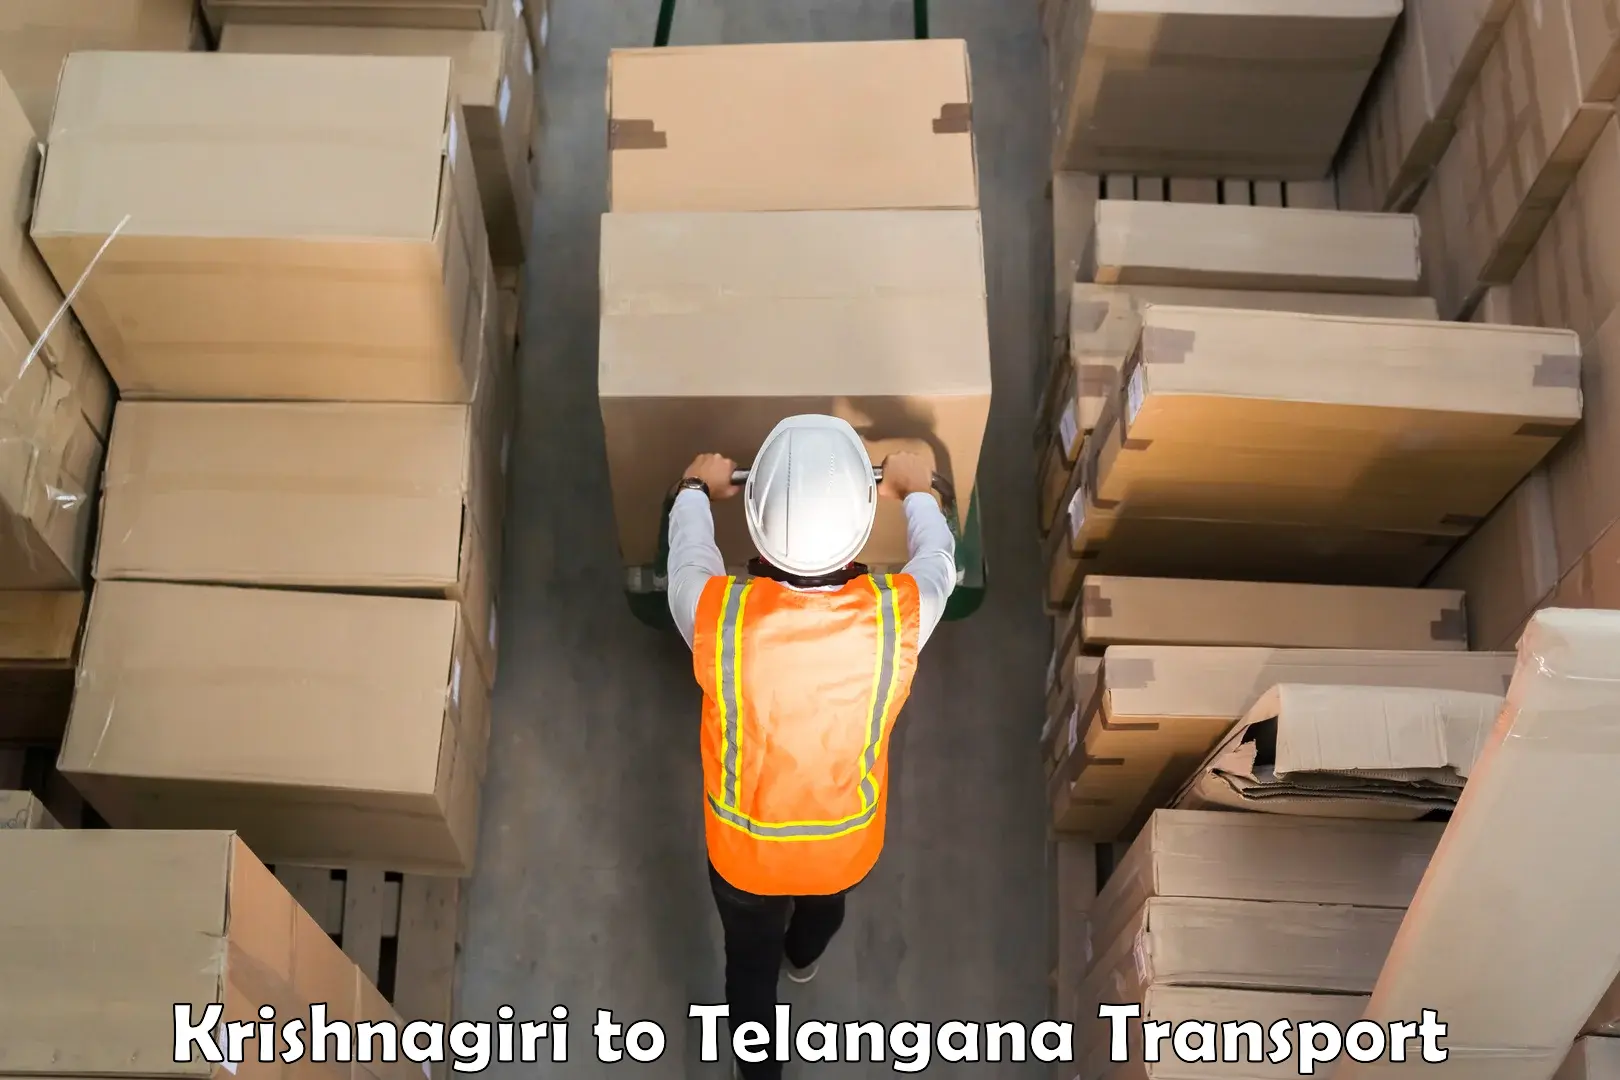 Container transport service Krishnagiri to Mulugu